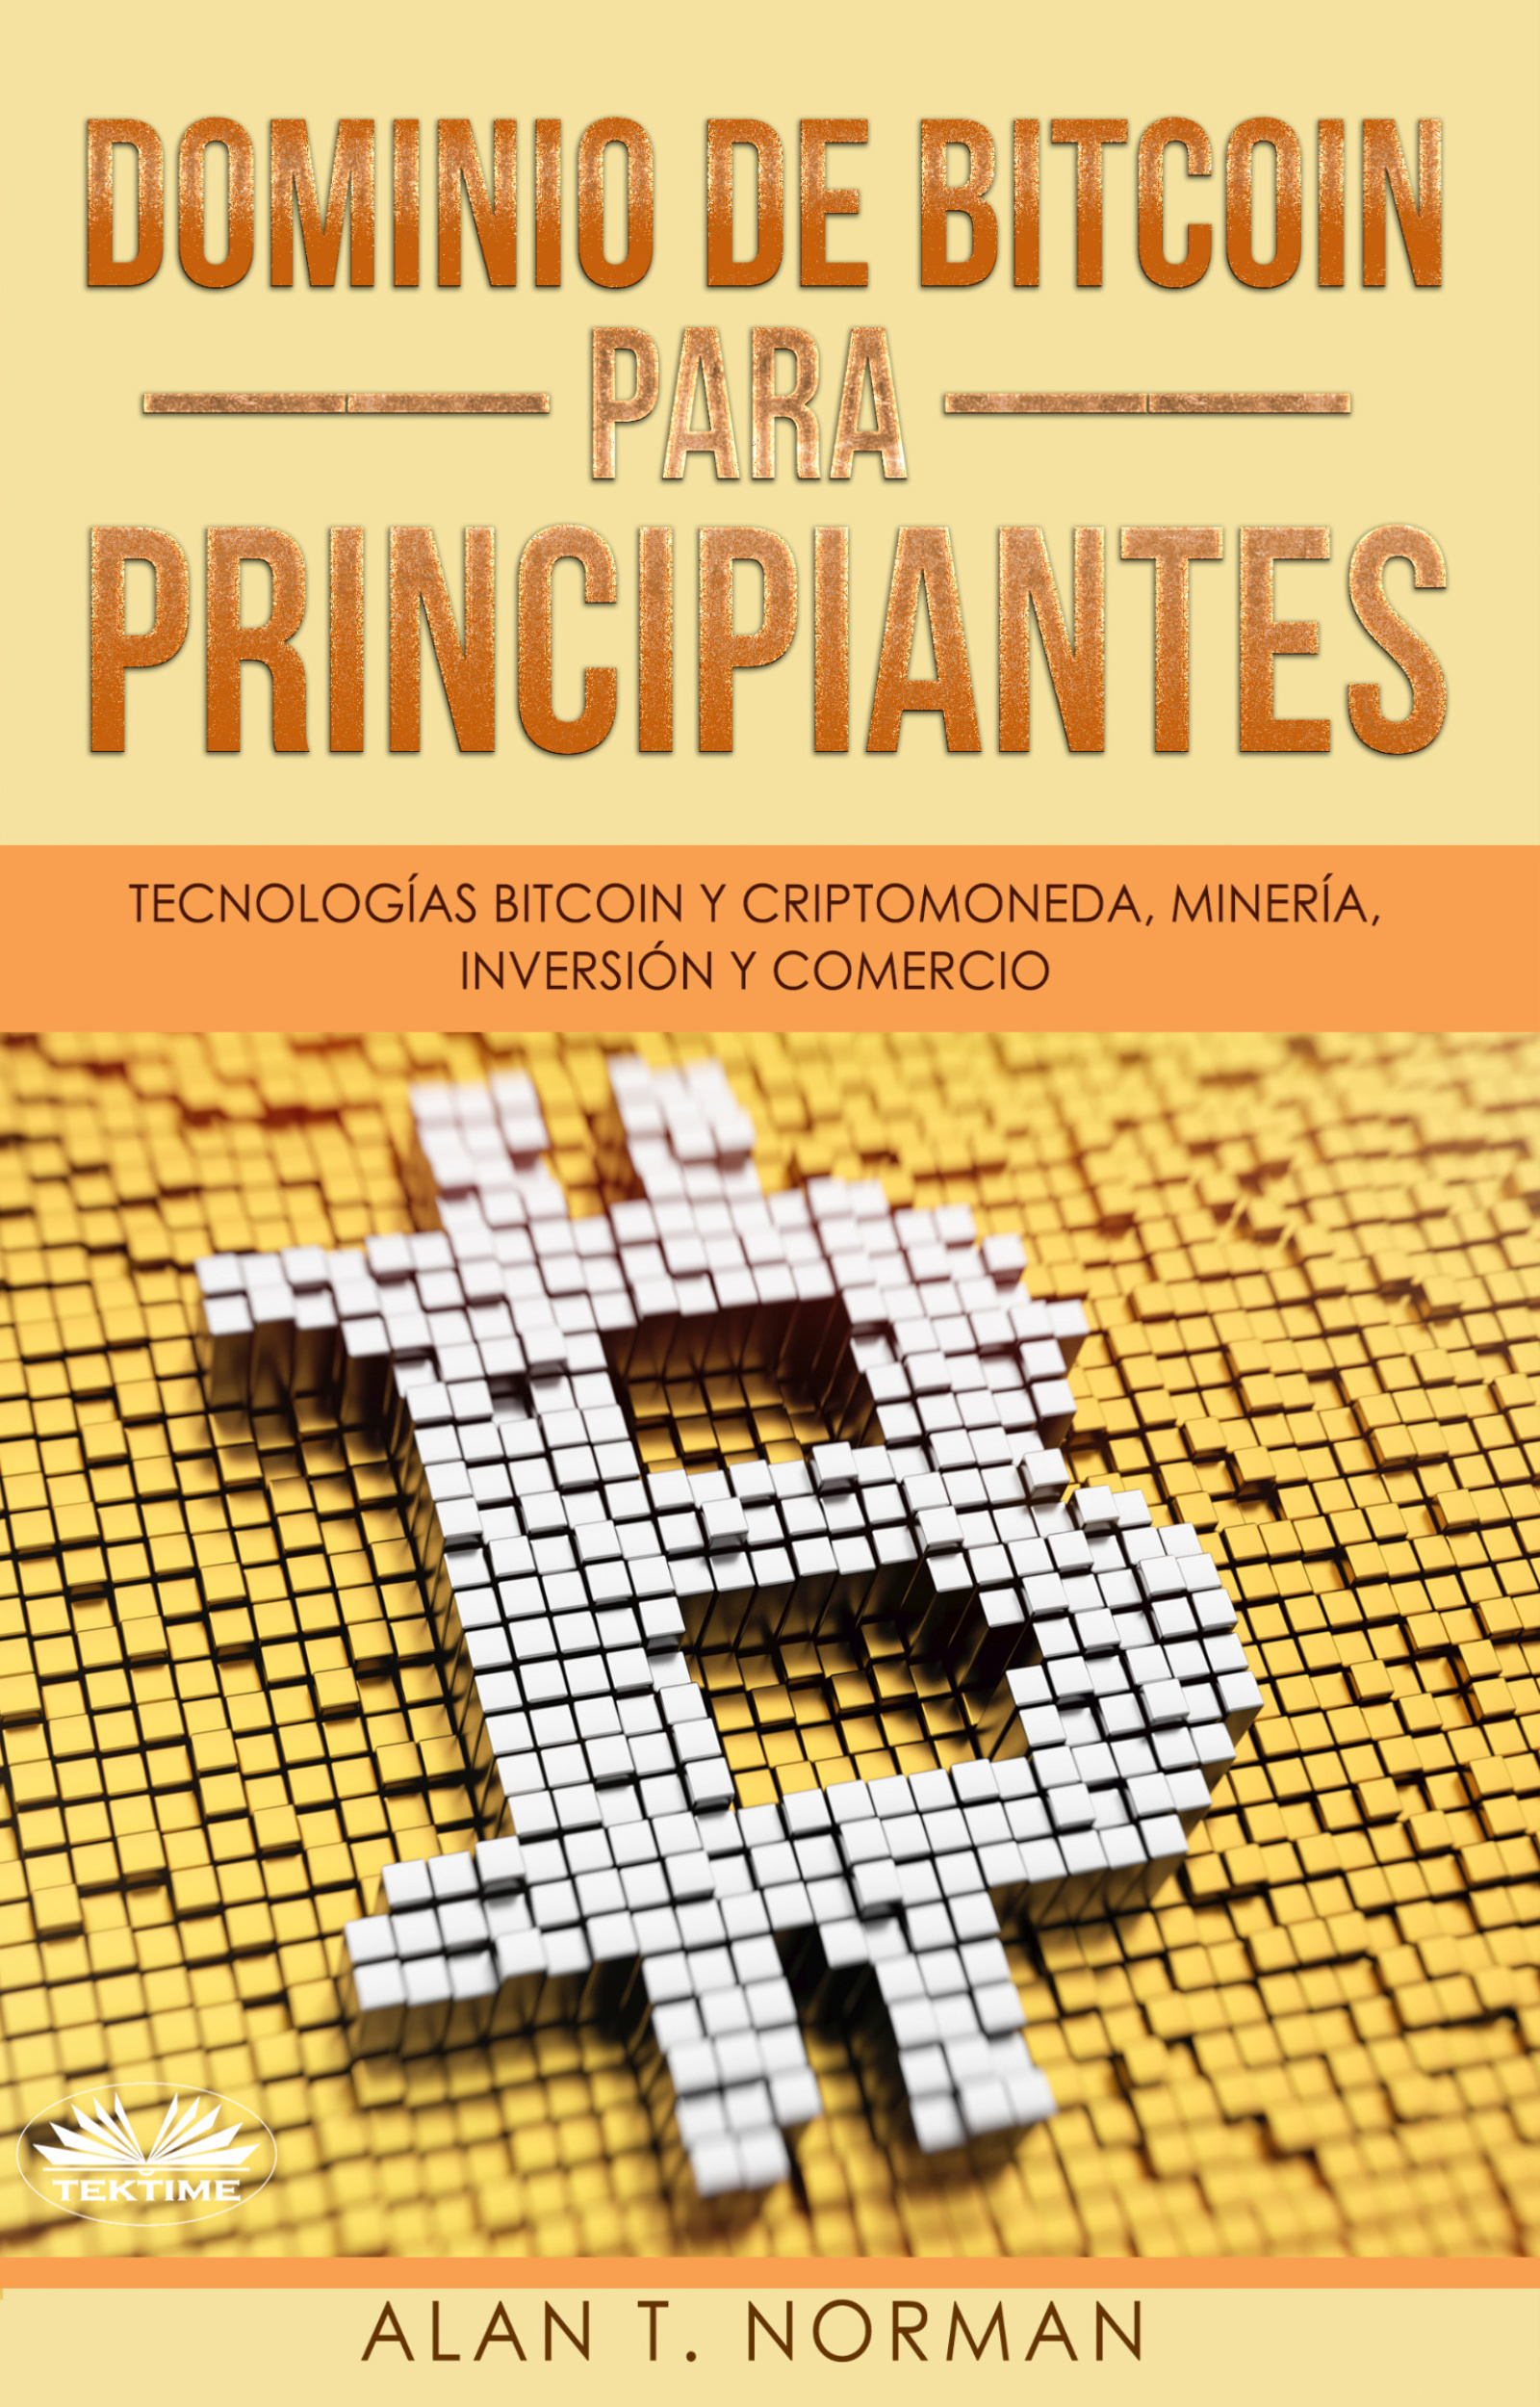 Книга Dominio De Bitcoin Para Principiantes из серии , созданная Alan T. Norman, может относится к жанру Управление, подбор персонала, Ценные бумаги, инвестиции, Личные финансы, Зарубежная деловая литература. Стоимость электронной книги Dominio De Bitcoin Para Principiantes с идентификатором 48773564 составляет 220.32 руб.